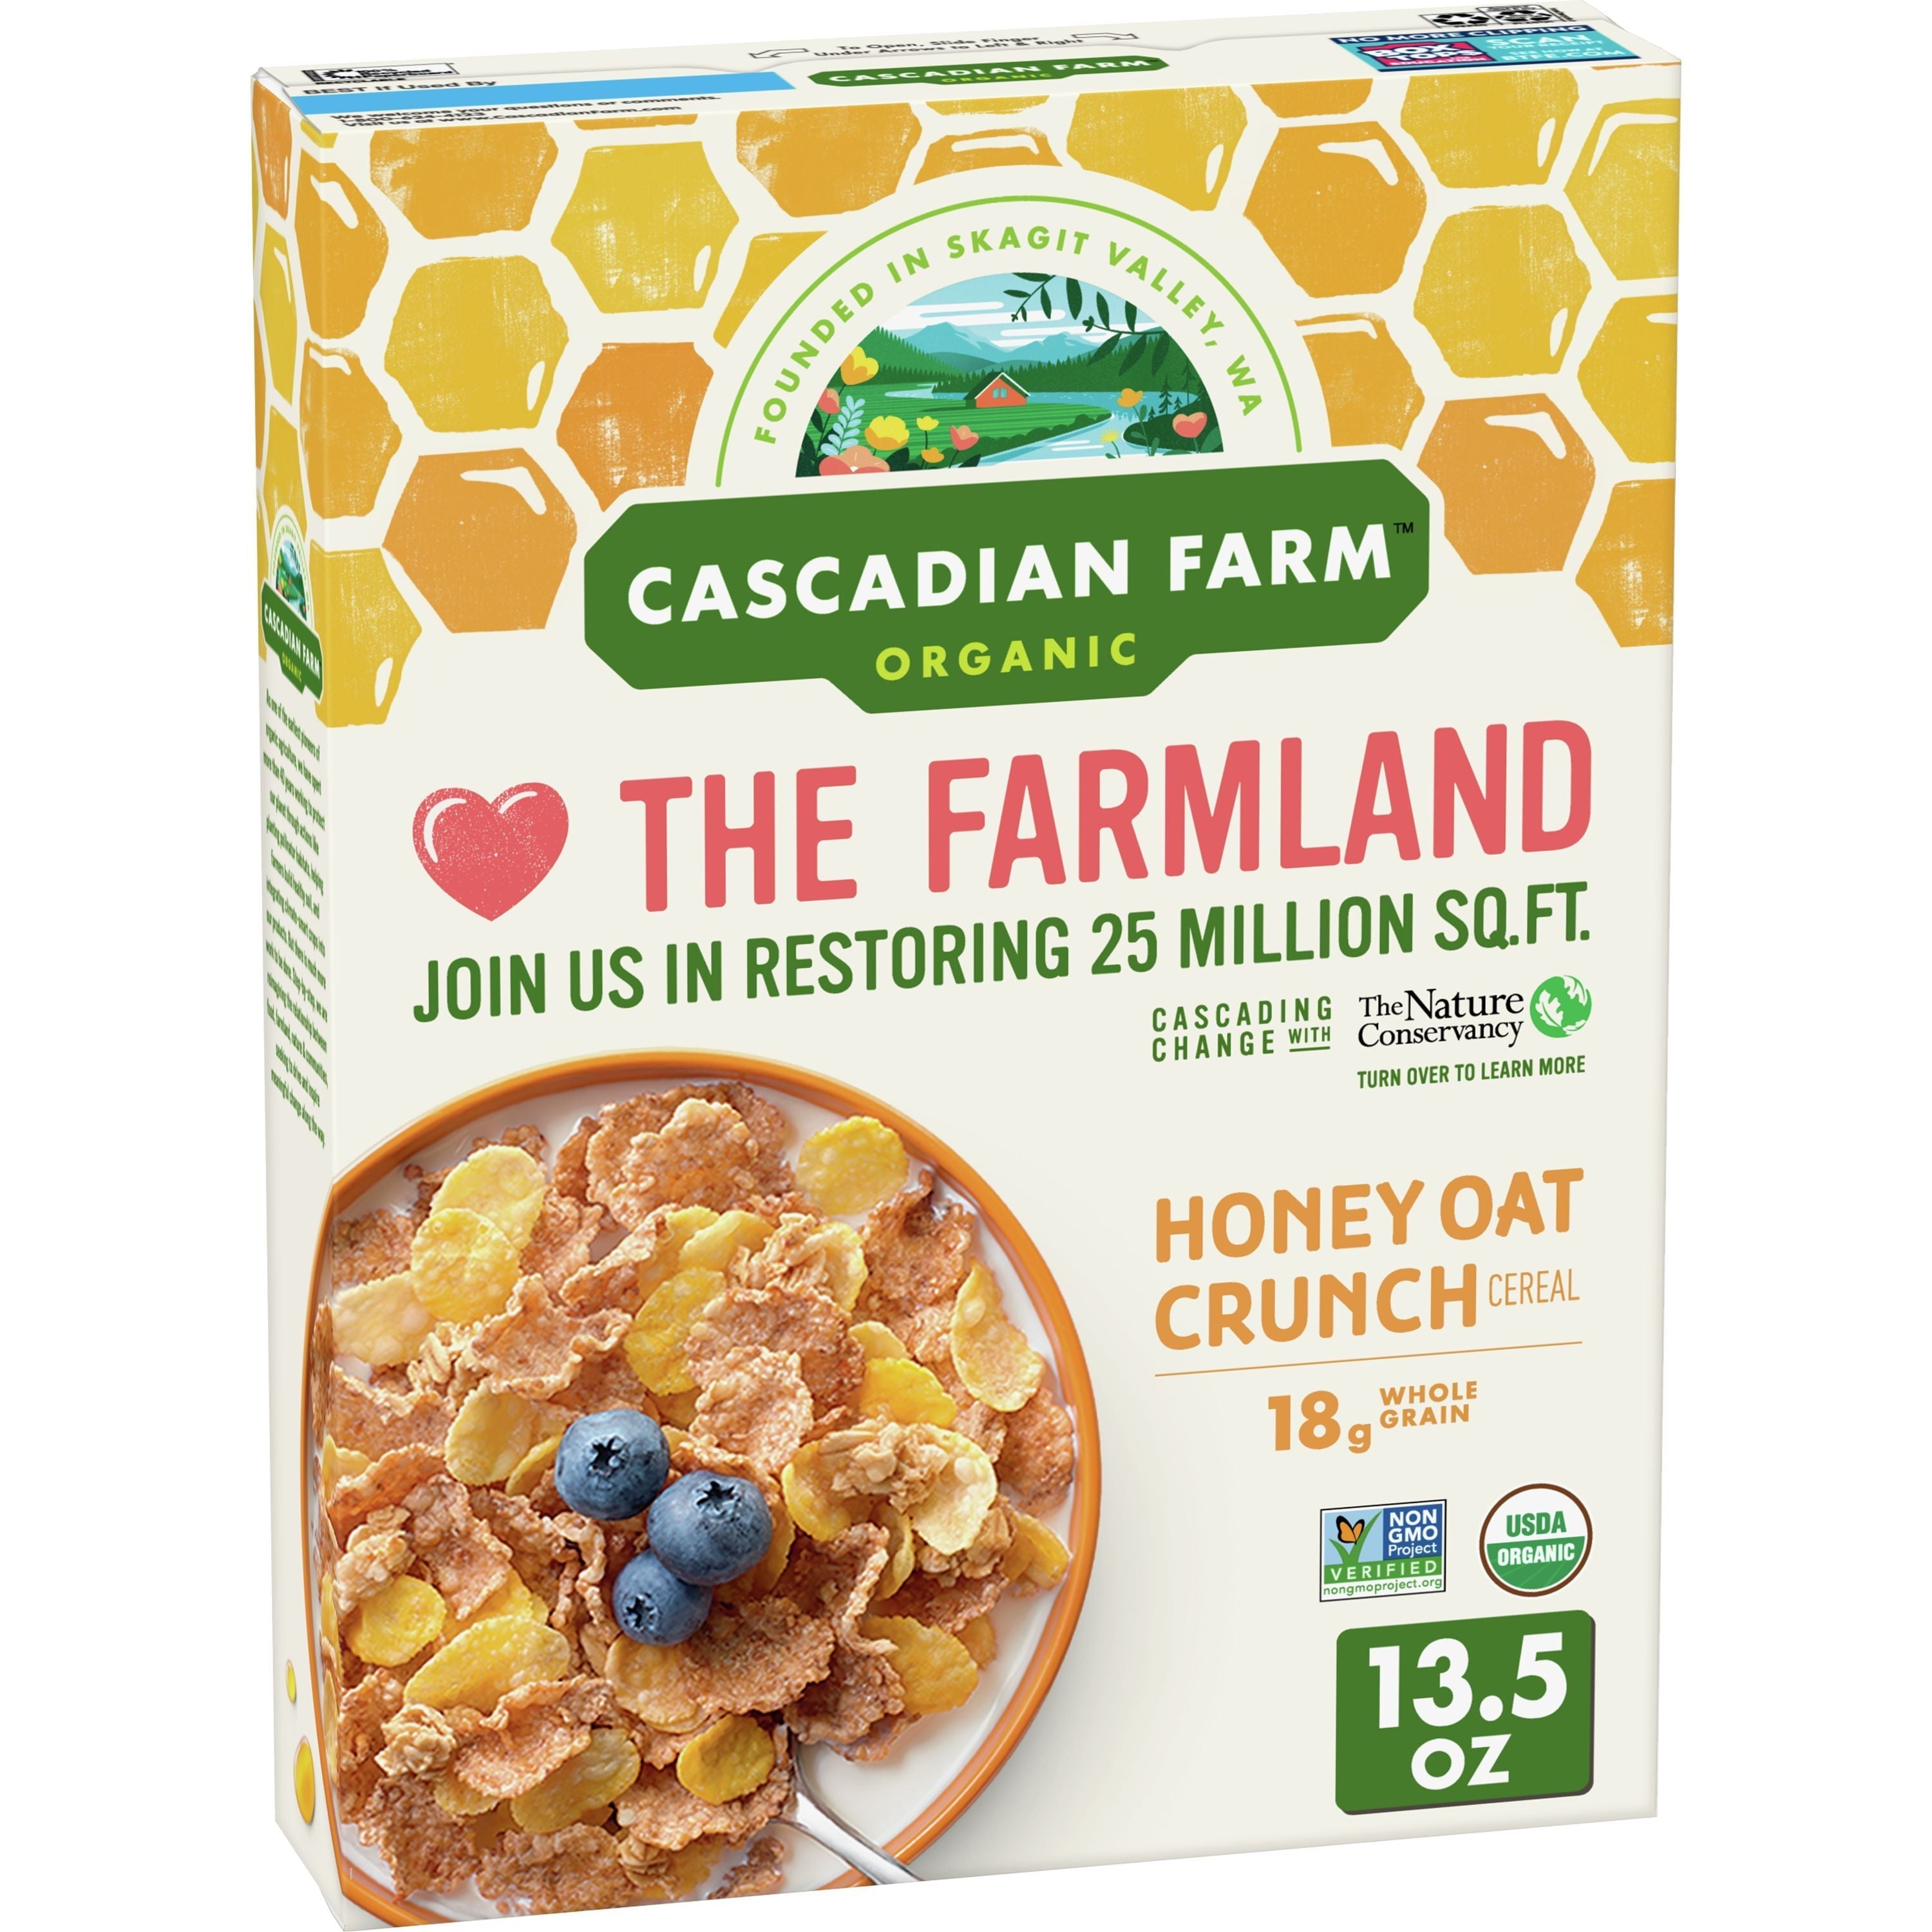 Cascadian Farm Organic The Farmland Honey Oat Crunch Cereal 13.5 Oz Box